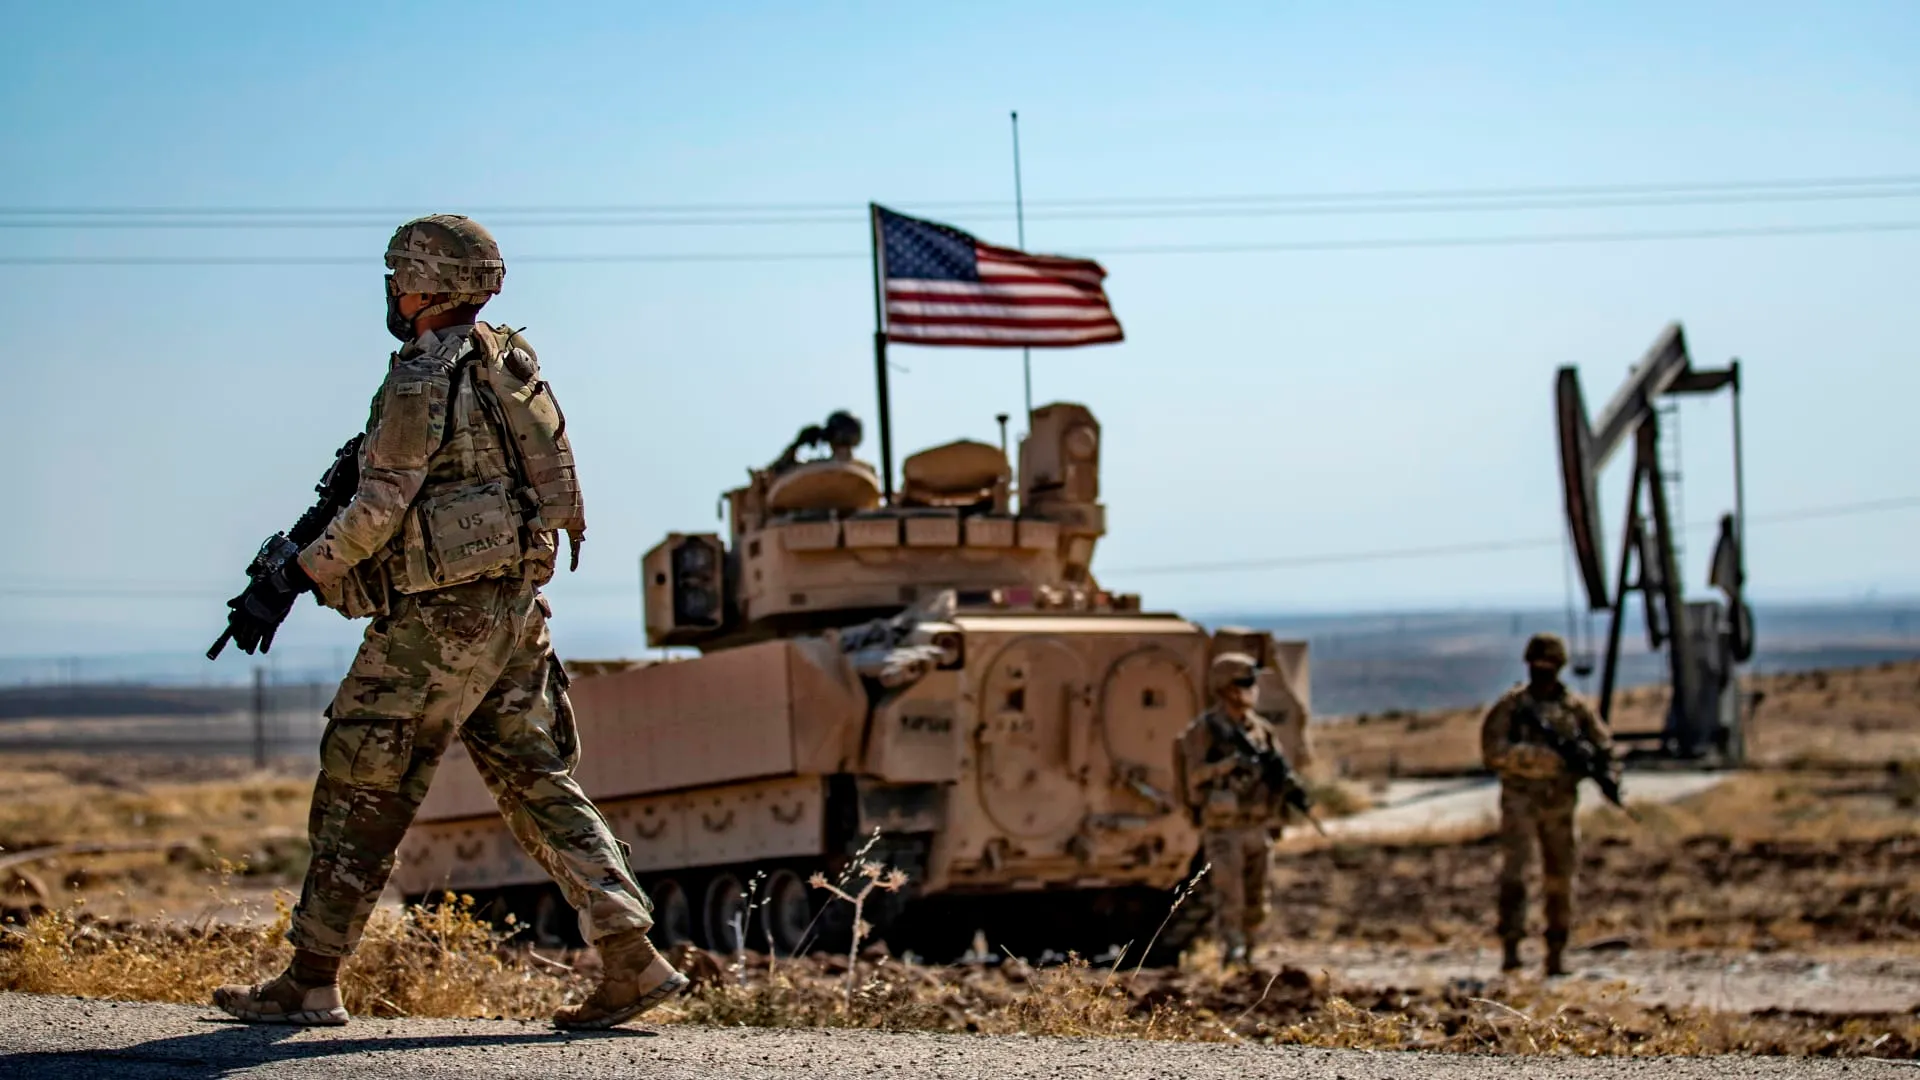 "سنتكوم" تؤكد إصابة 4 جنود أميركيين بجروح بهجوم شرقي سوريا